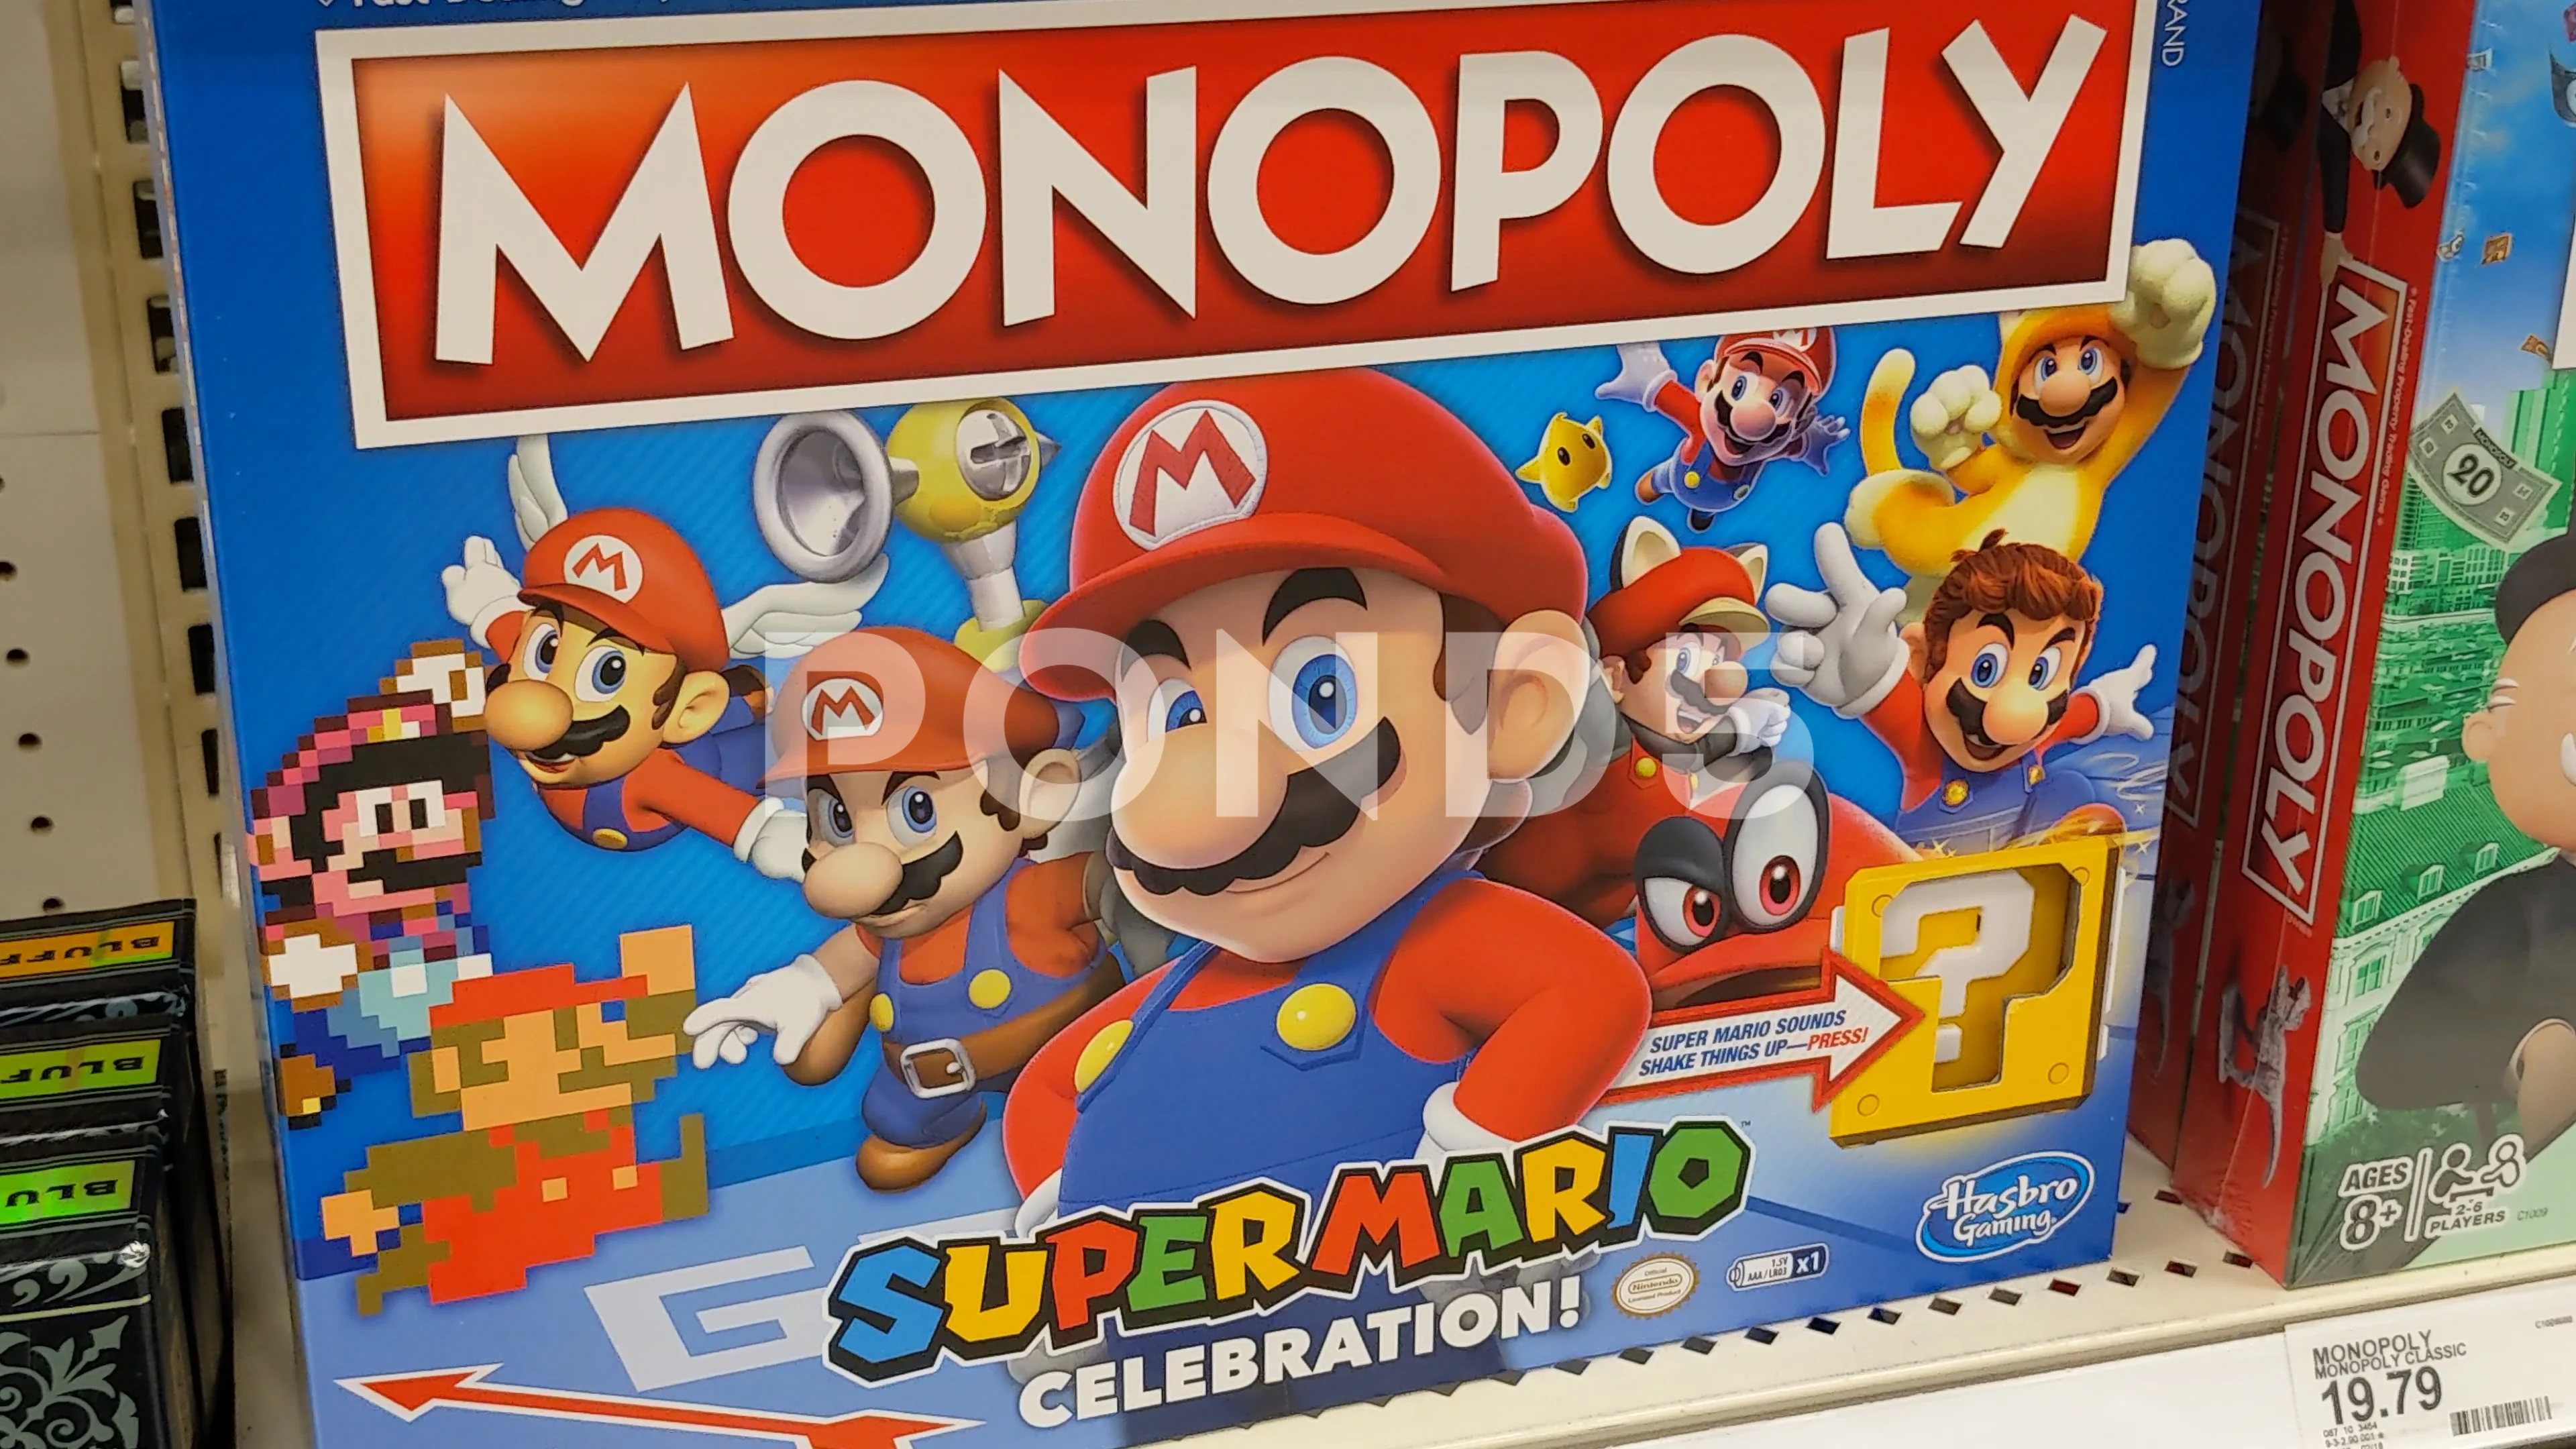 Monopoly Mario Bros